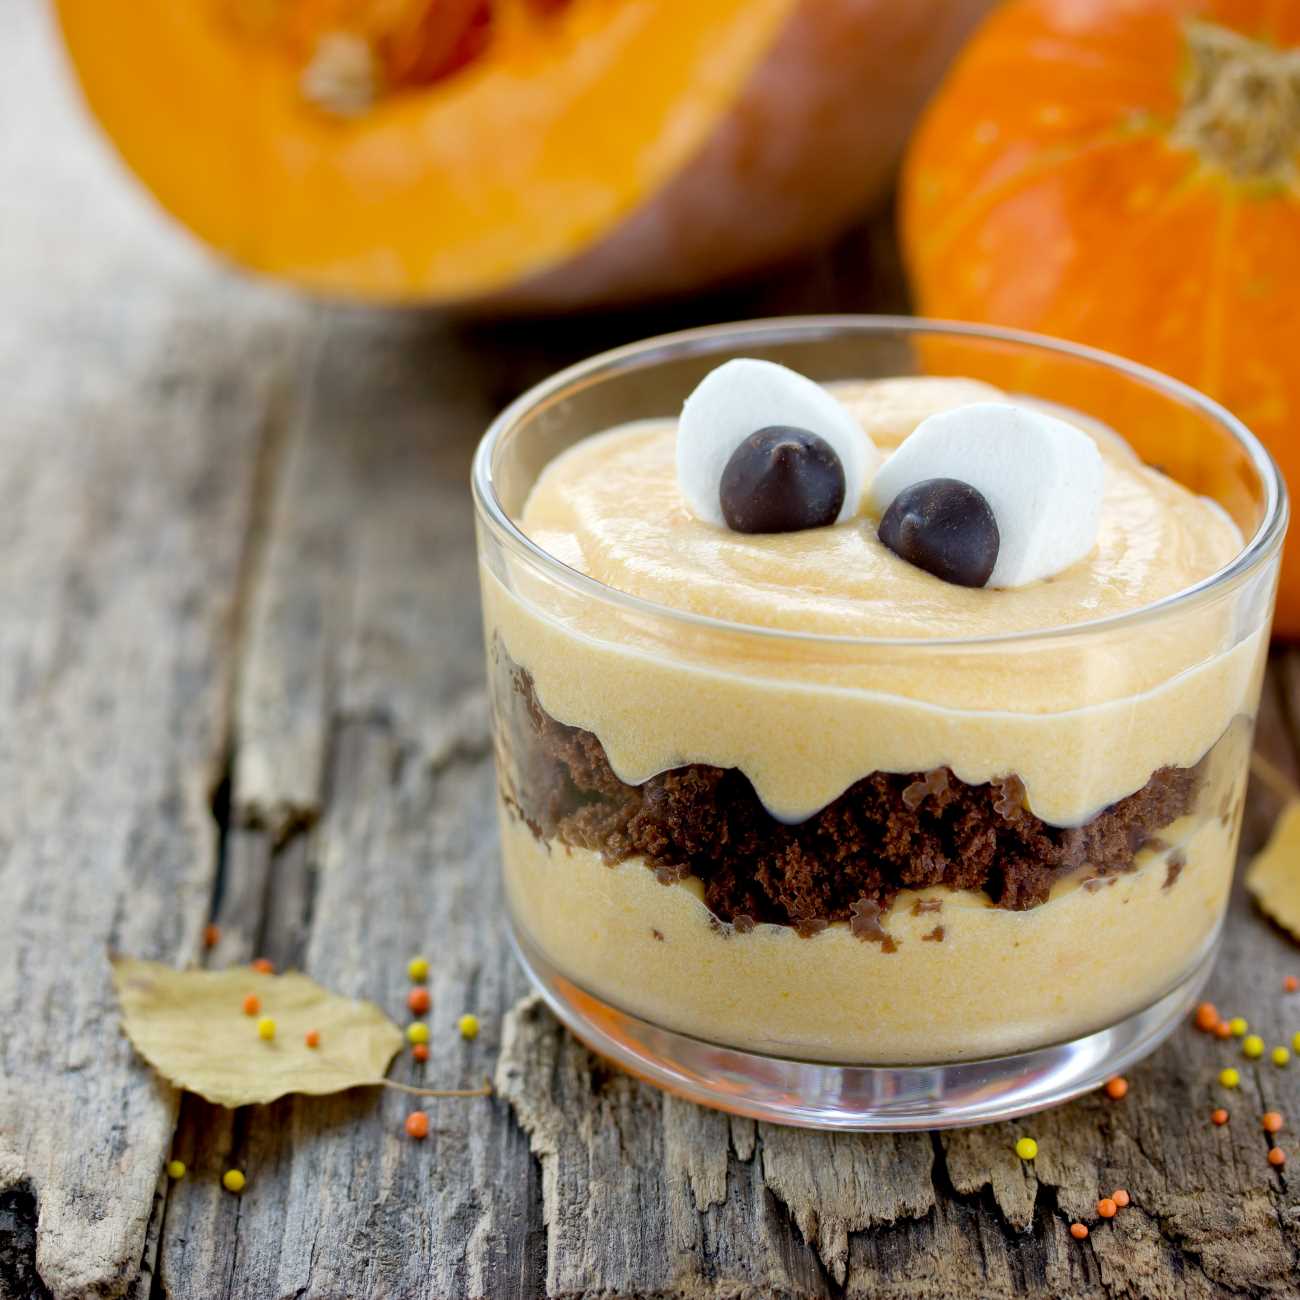 Halloween Dessert im Glas mit Marshmallow-Augen wird auf einem Holz-Untergrund gezeigt.